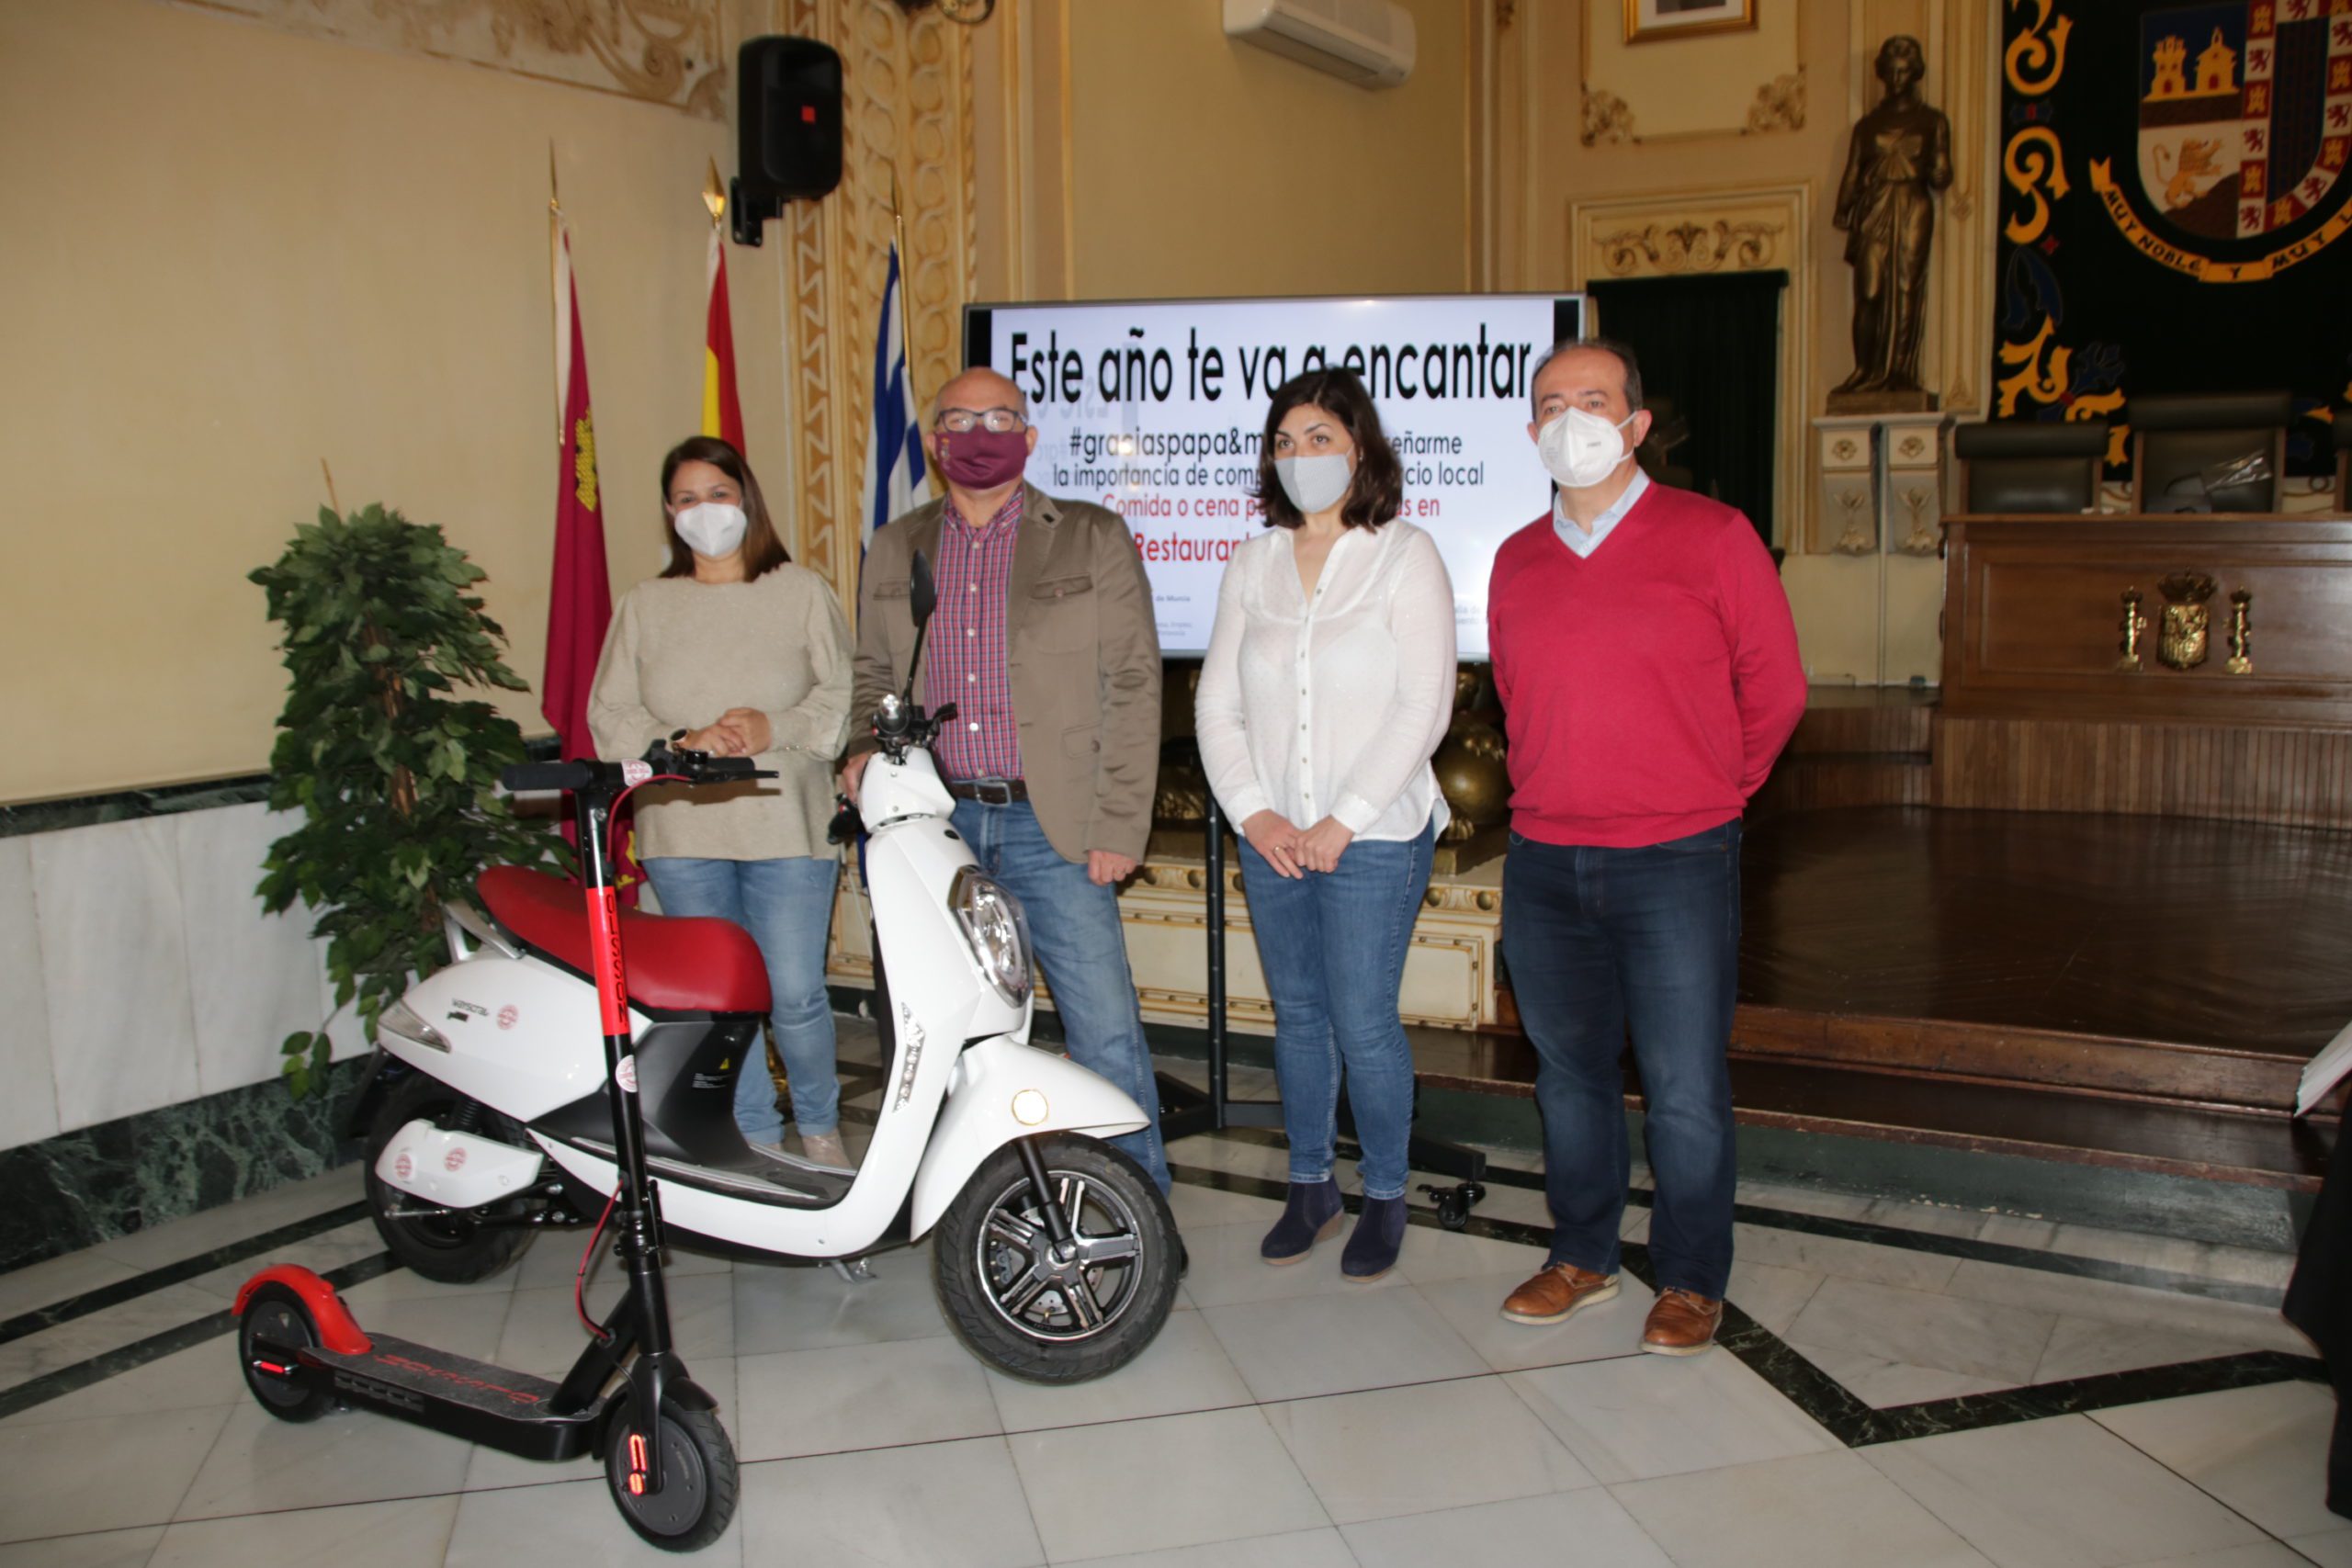 Paquita Carrión se lleva la moto de la campaña de Comercio «Este año te va encantar»